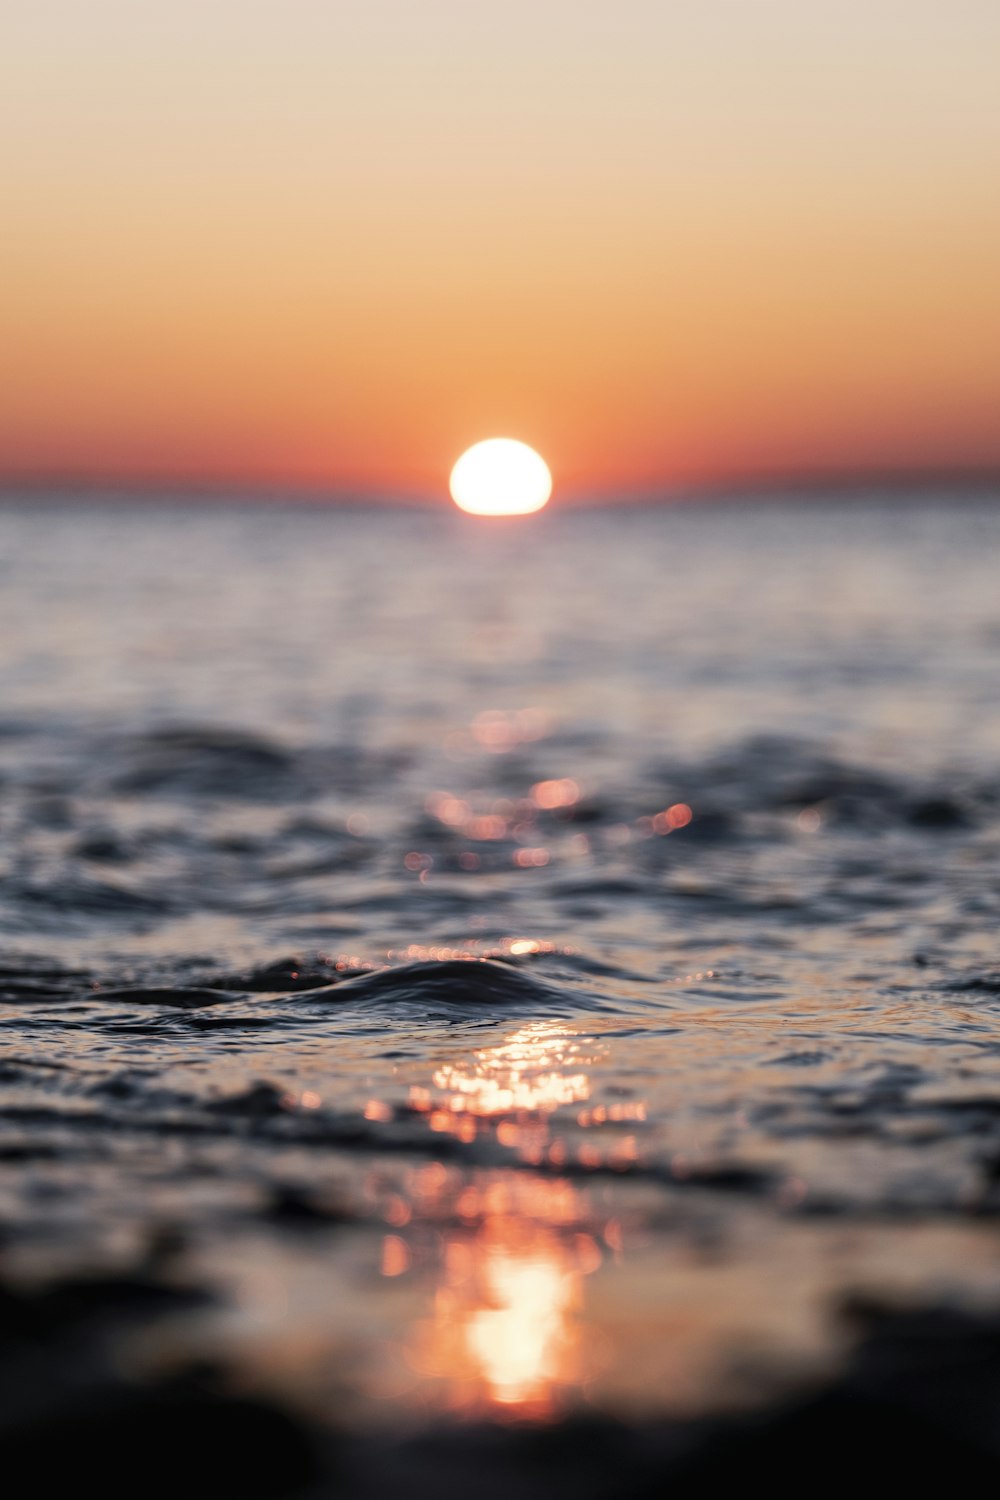 Il sole sta tramontando sull'acqua dell'oceano